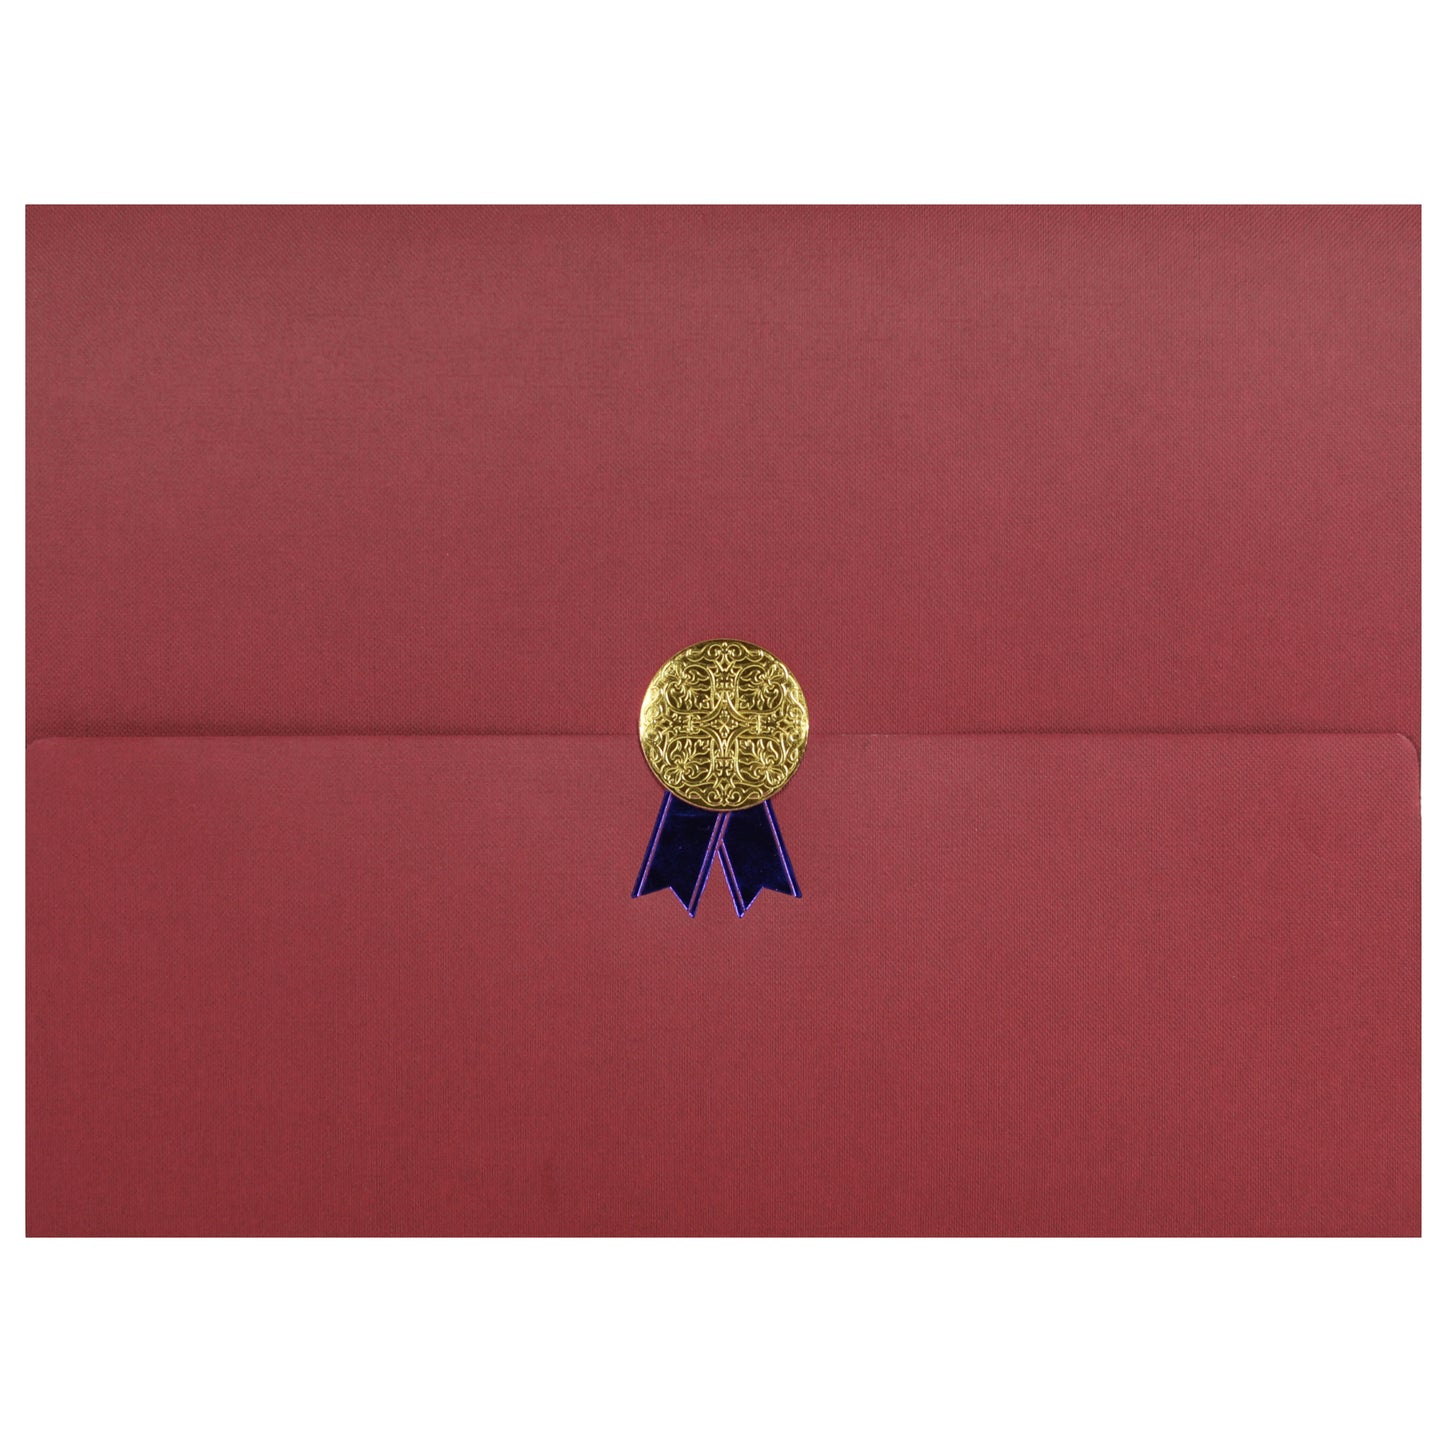 St. James® Porte-certificats/Couvertures de documents/Porte-diplômes, Bordeaux, Sceau d'or avec ruban bleu, Paquet de 5, 83817